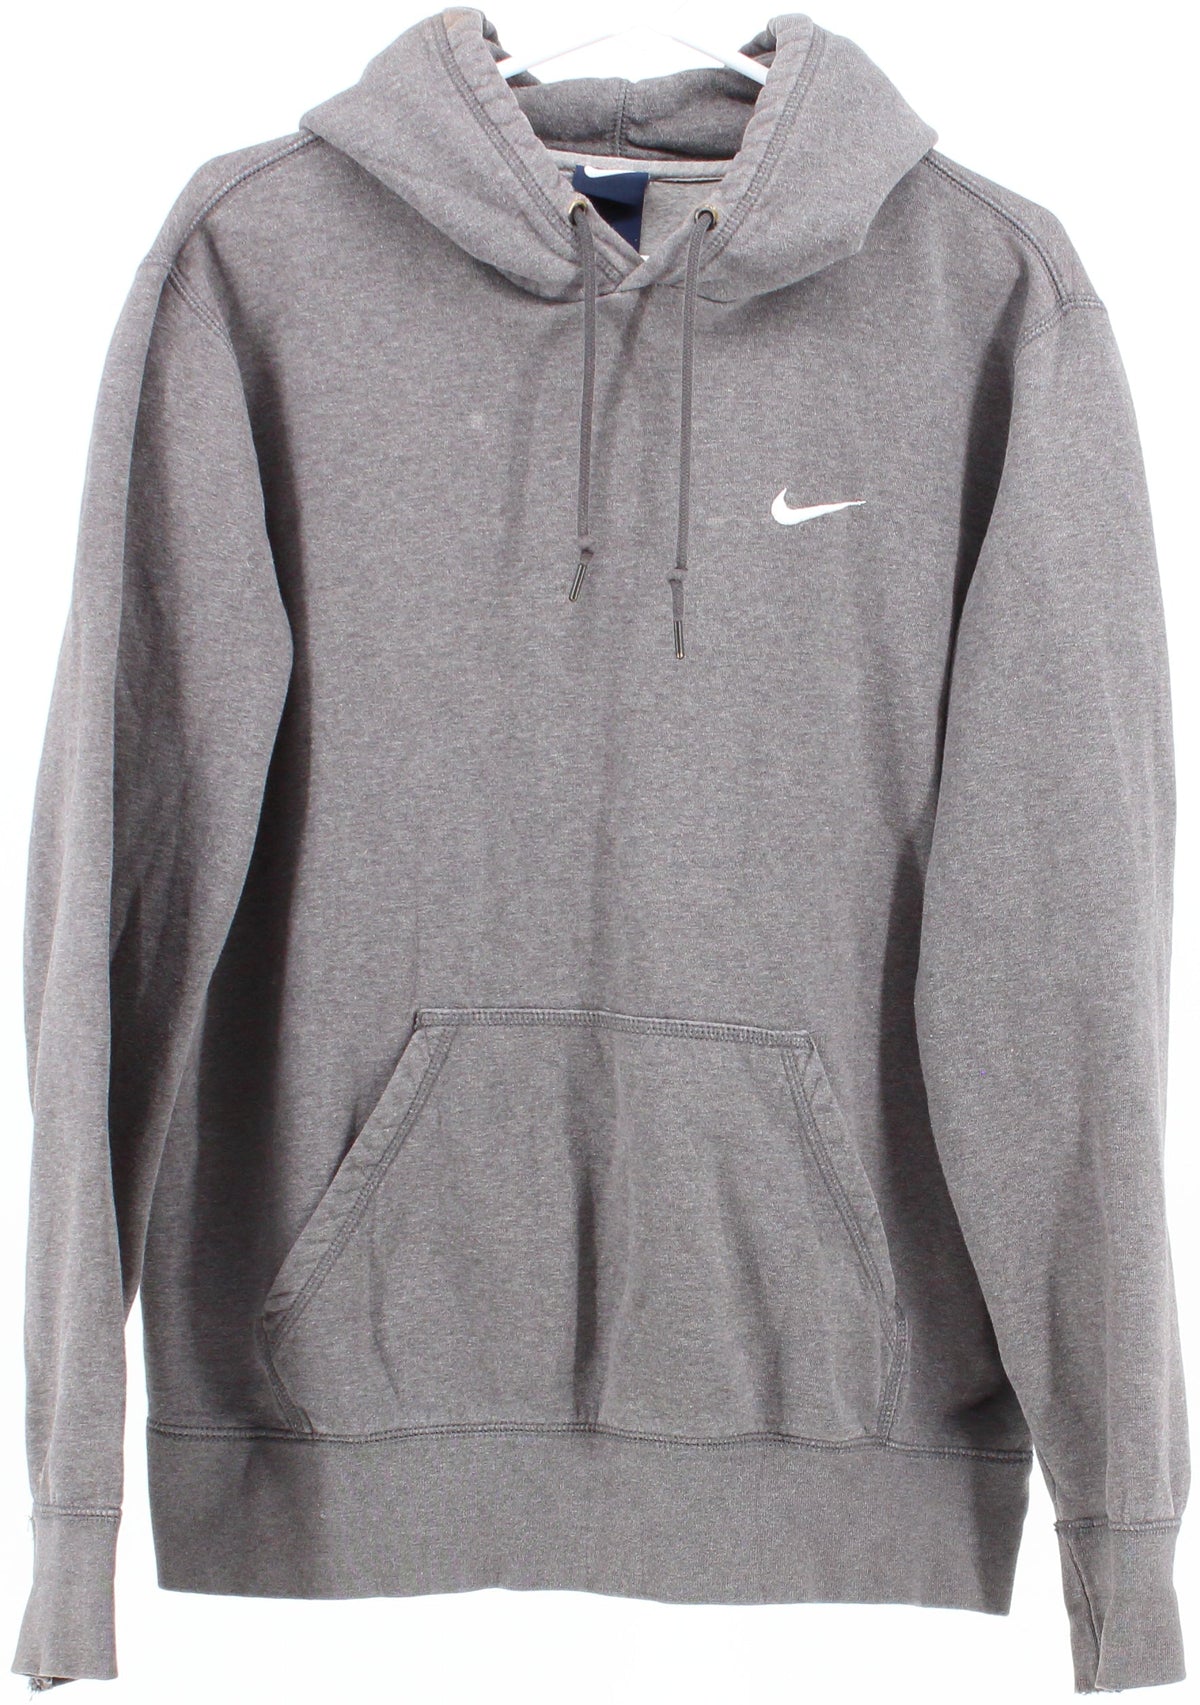 Nike Grey Hooded Sweatshirt